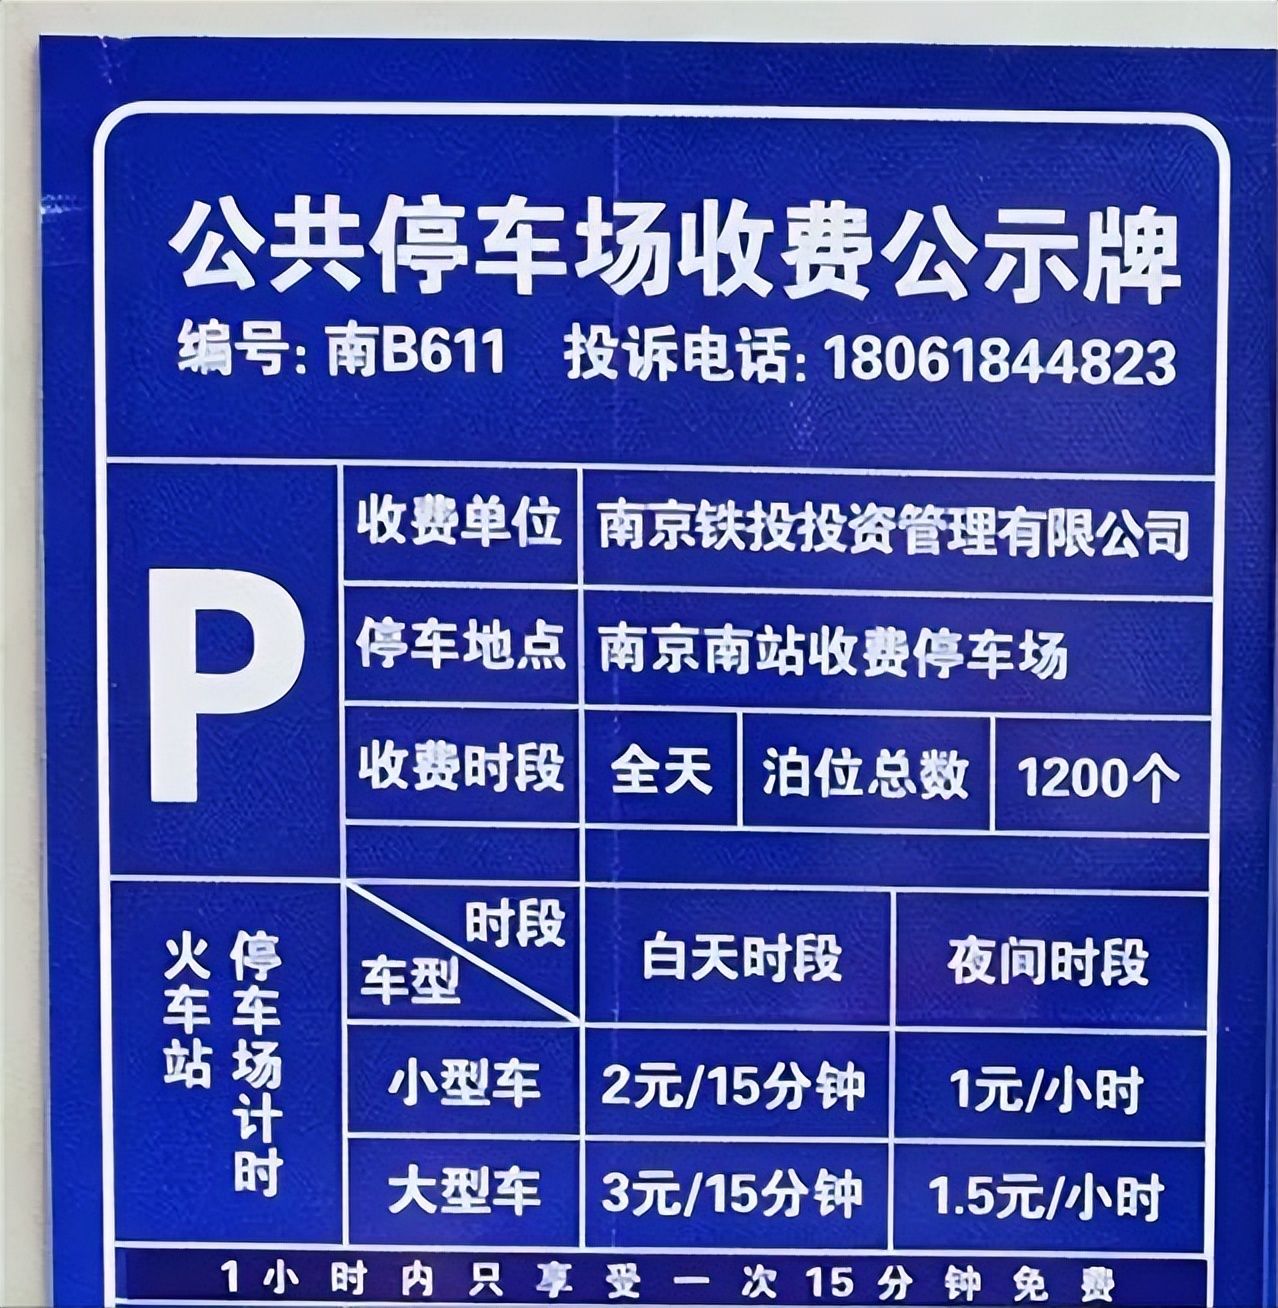 南京南站停车费用,南京南站停车场24小时收费标准